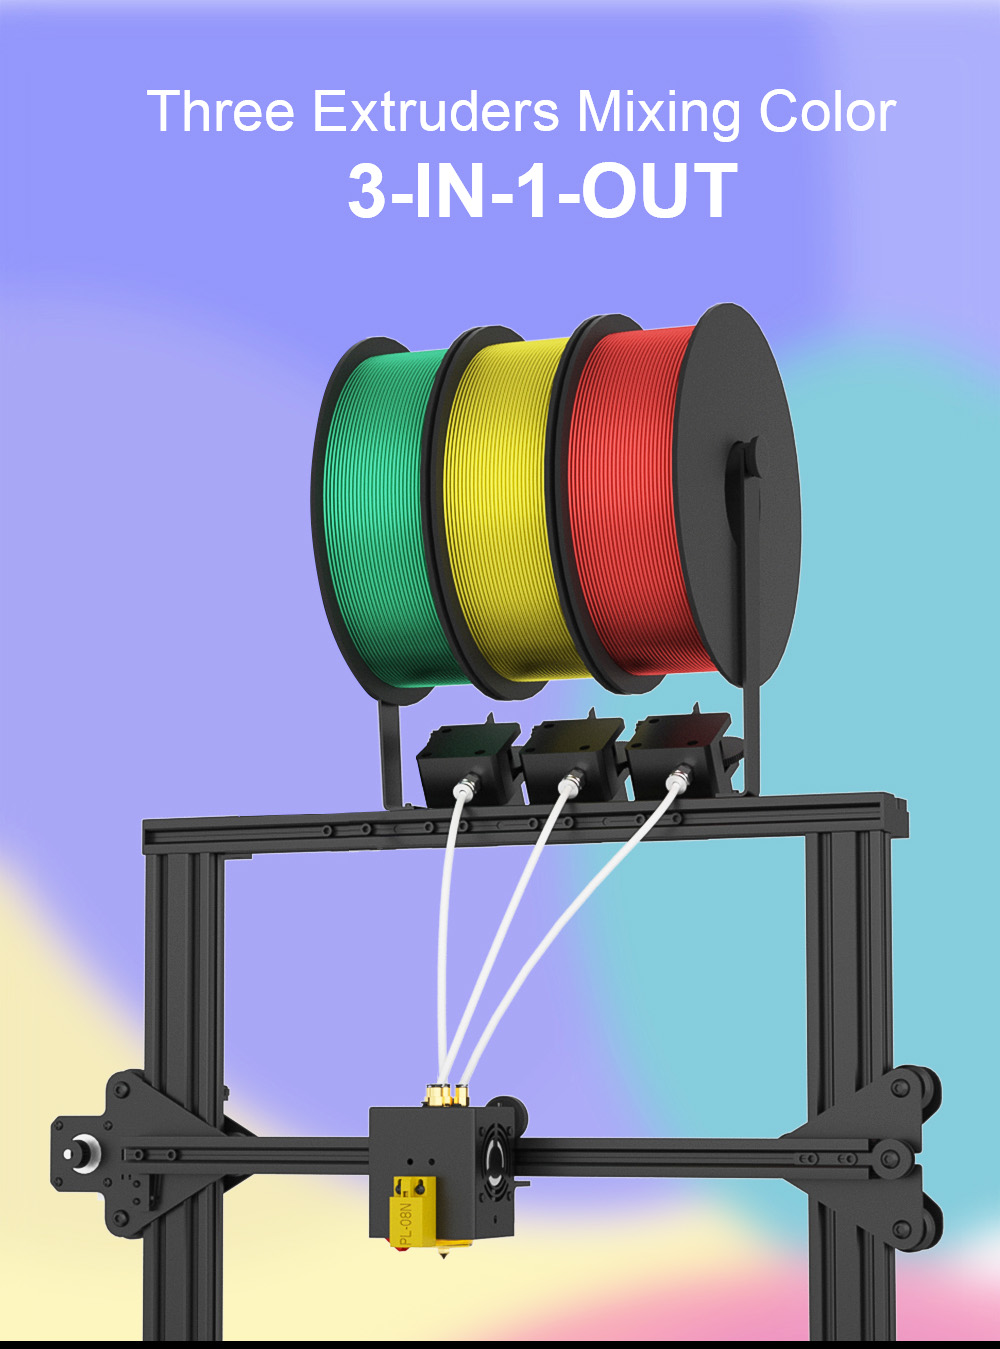 Zonestar Z8PM3 Экструдер 3-IN-1-OUT Смешивание цветов 3D-принтер ЖК-экран Высокоточное разрешение DIY Kit - черный